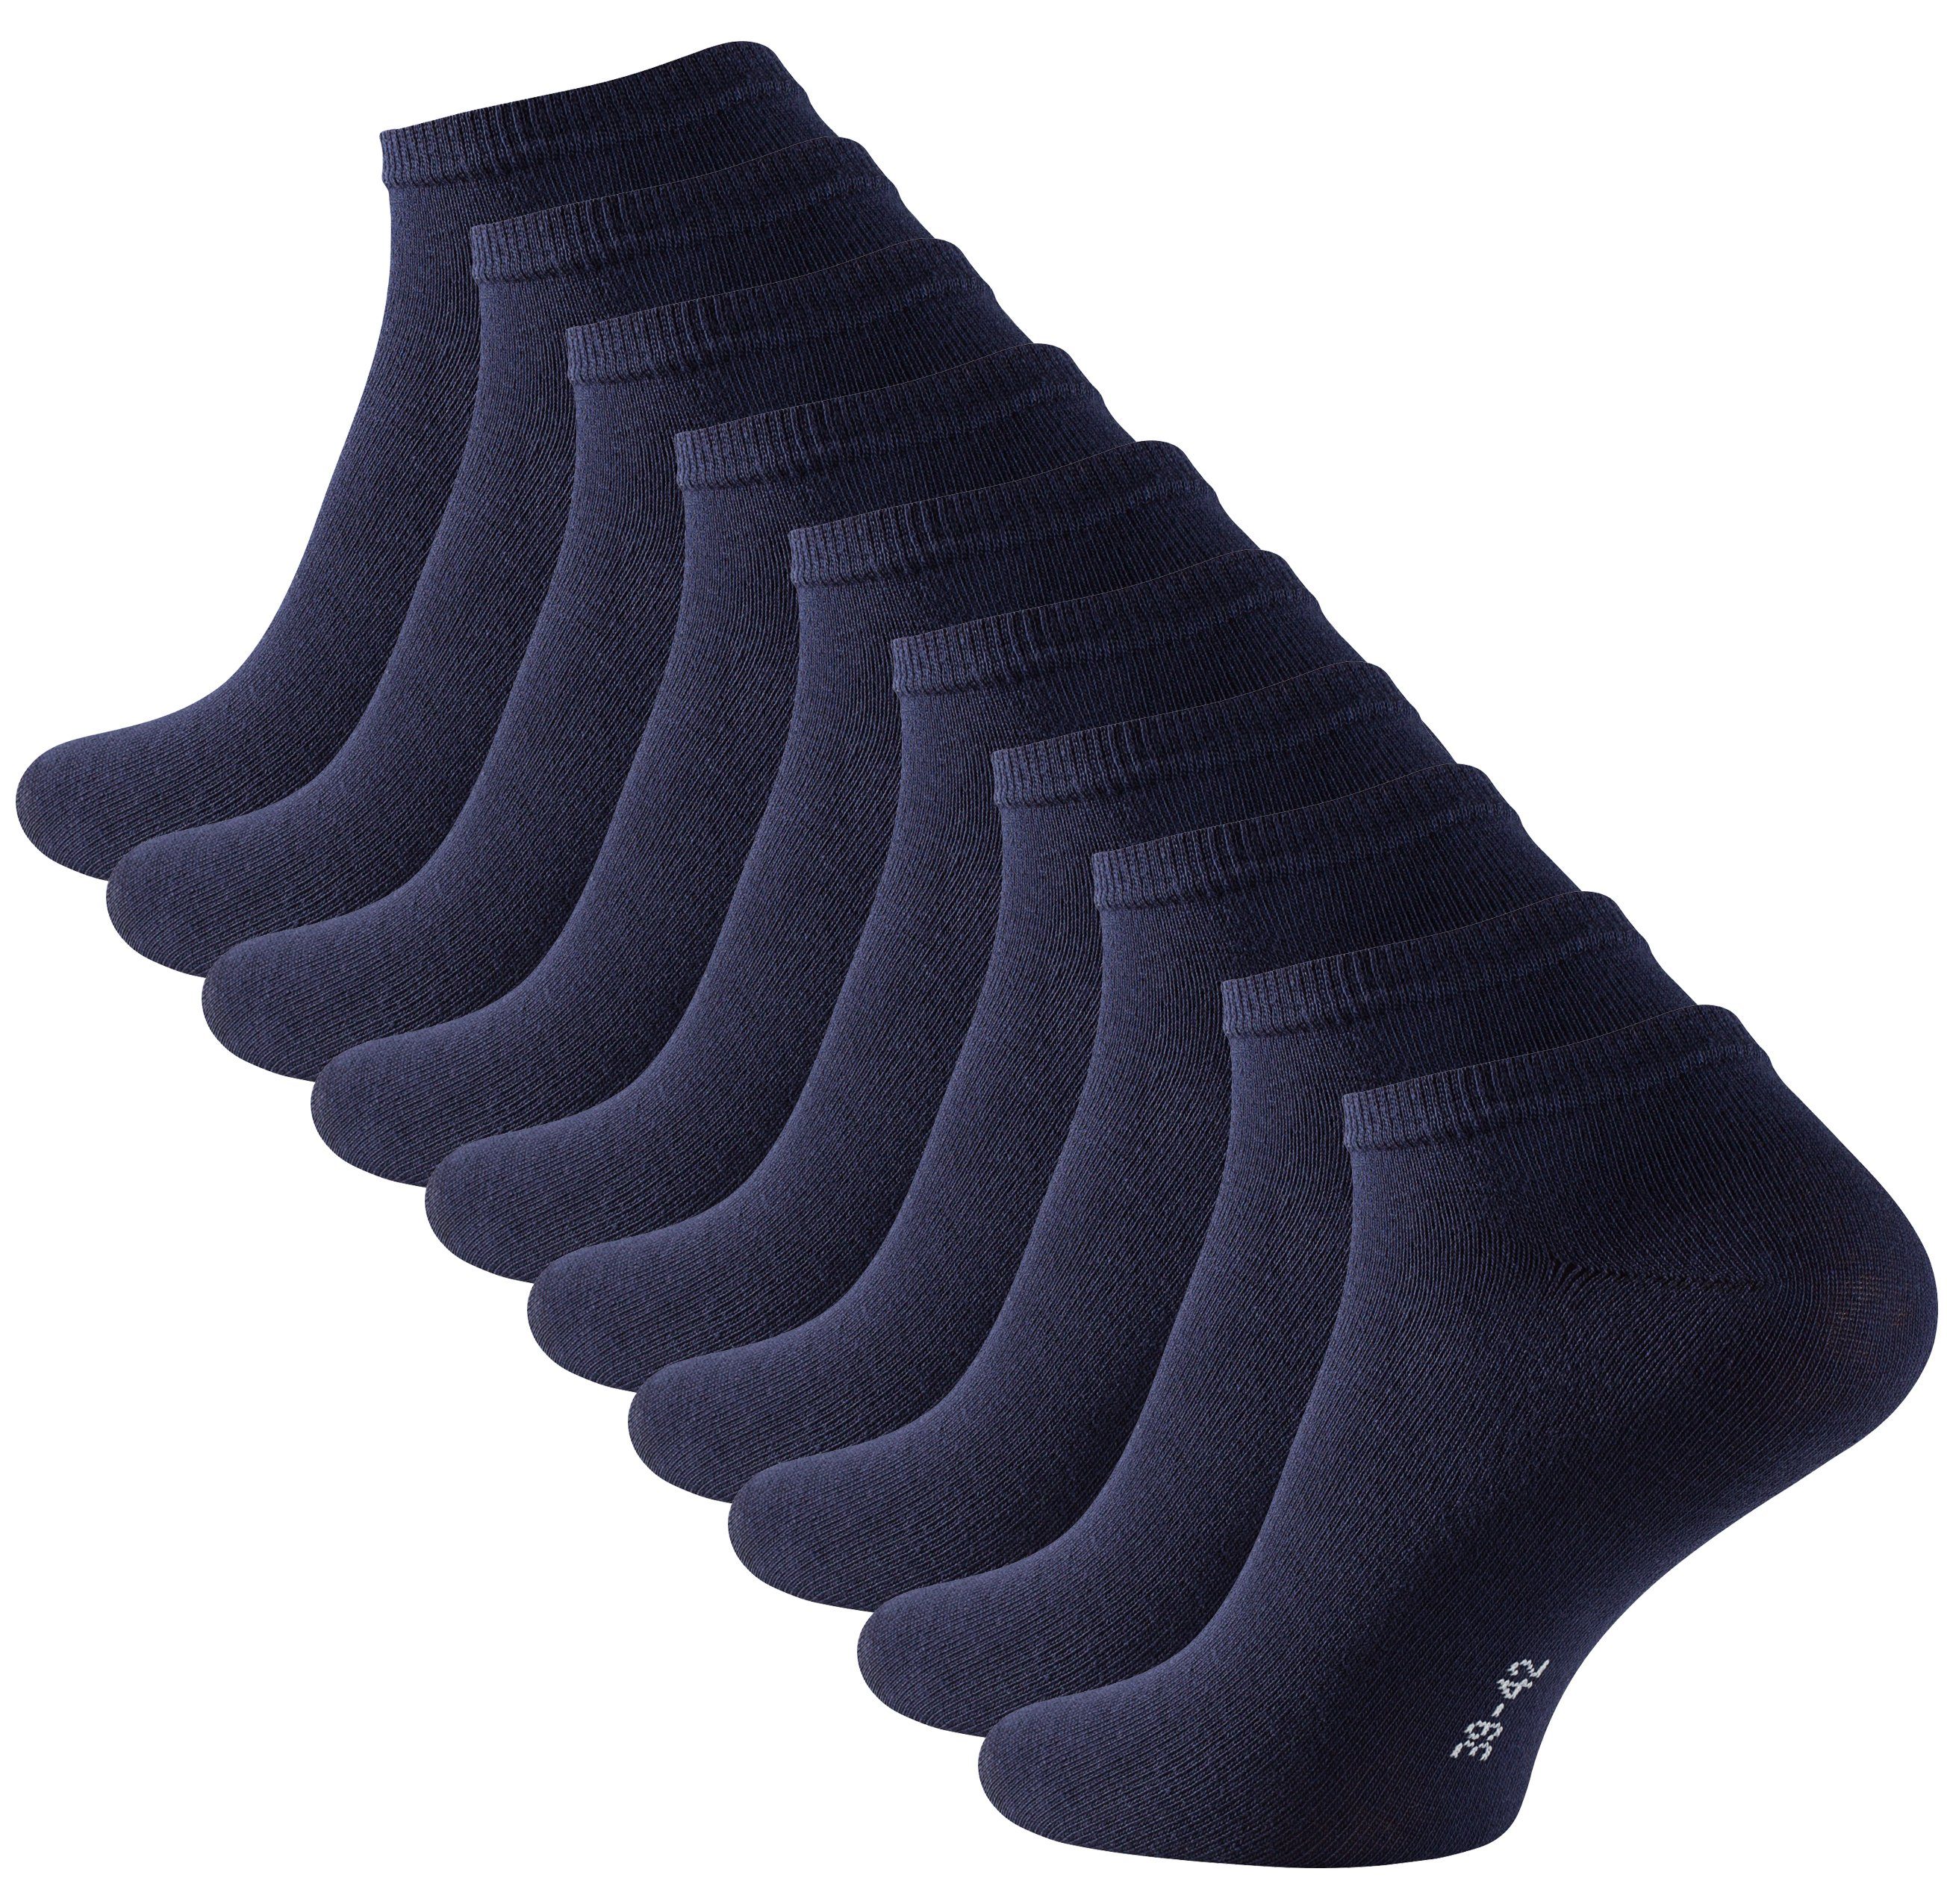 Vorzüglicher Cotton Prime® Sneakersocken (10-Paar) in Baumwollqualität Marine angenehmer